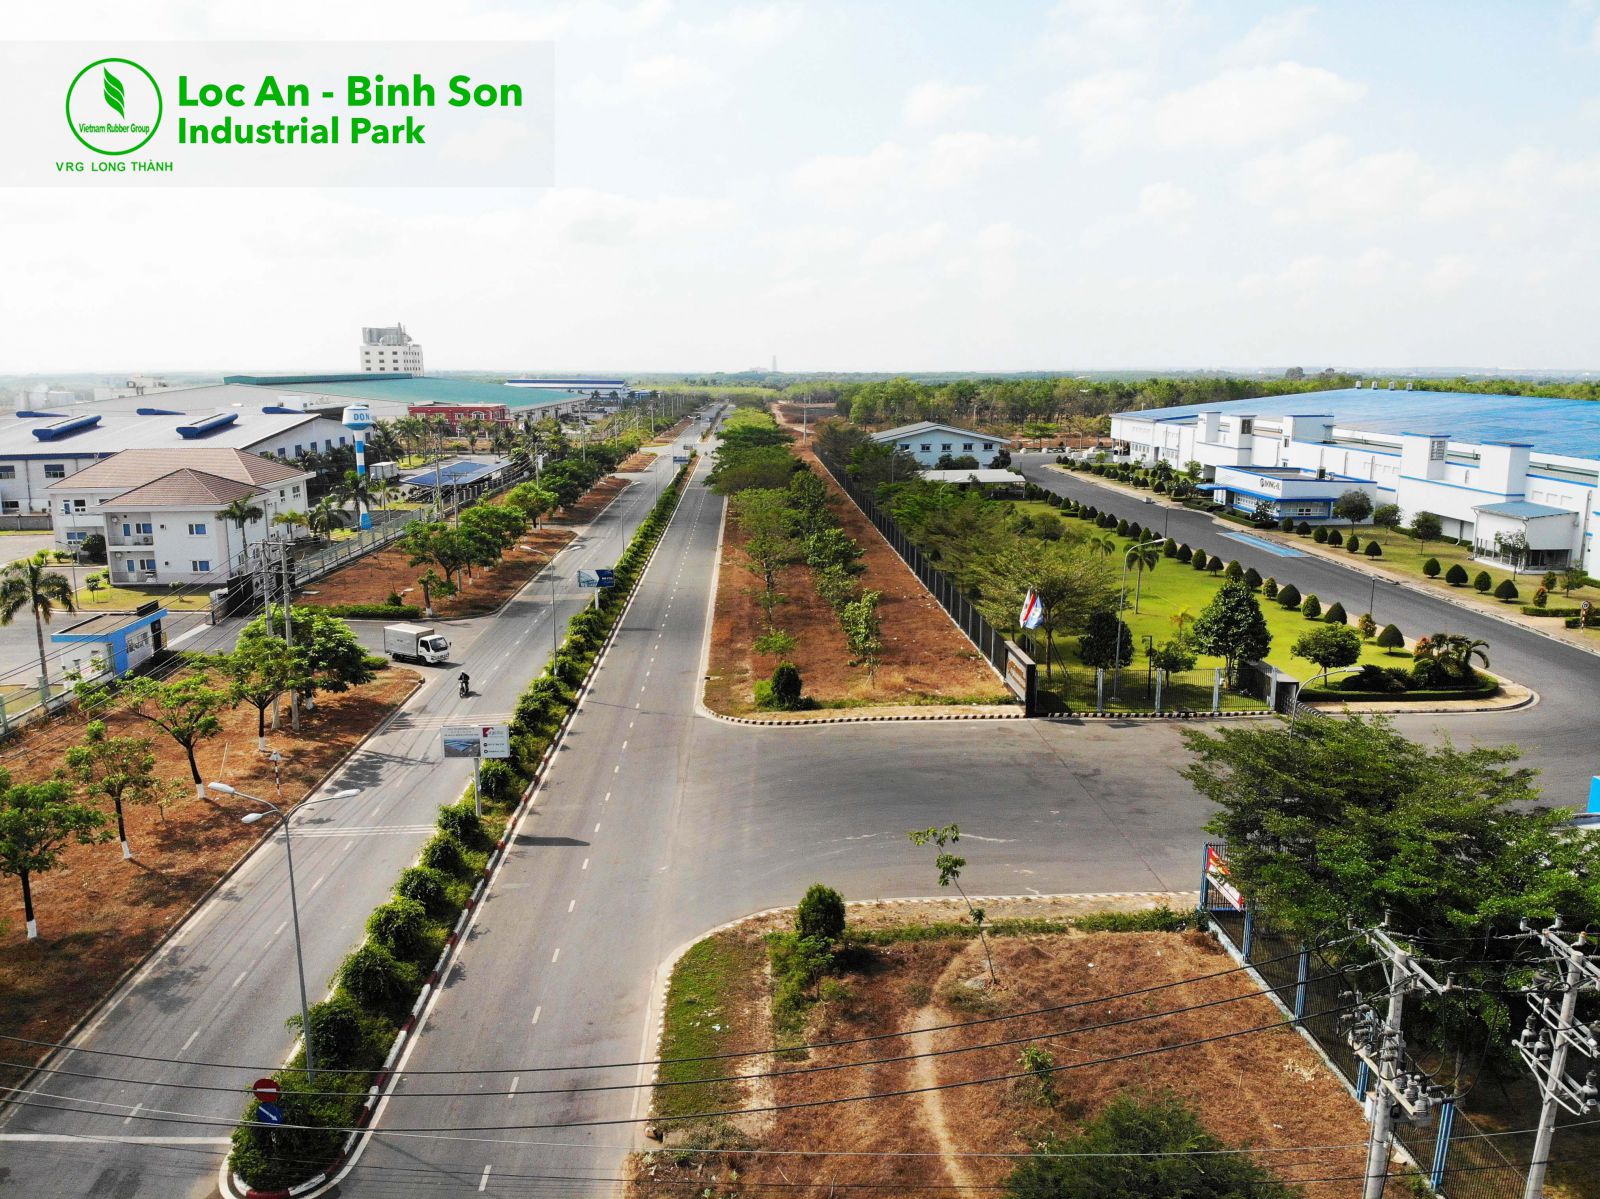 Đối diện KCN Lộc An Bình Sơn là Khu tái định cư sân bay Quốc tế Long Thành